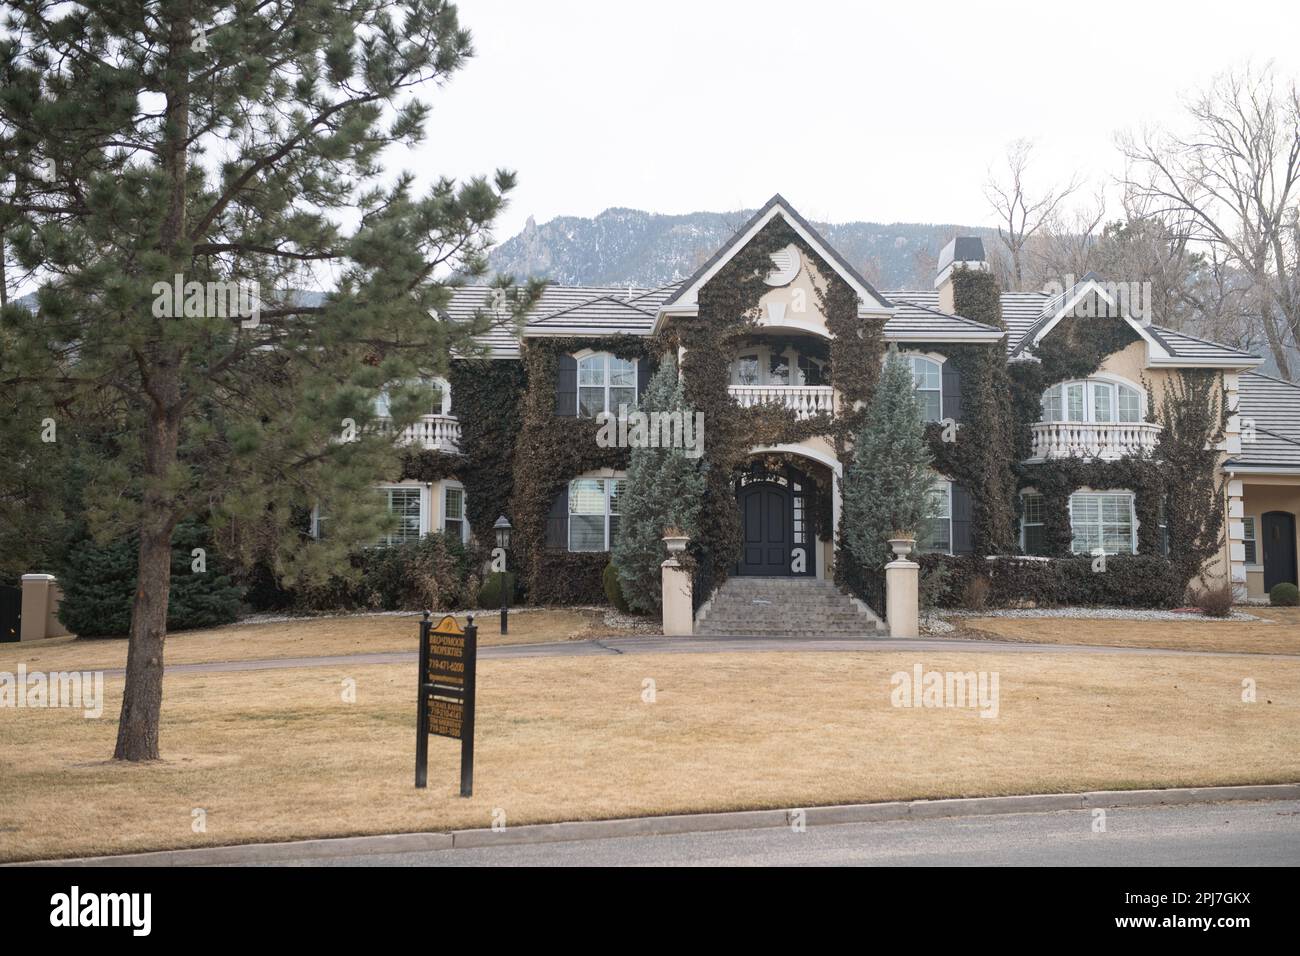 Großes exklusives Einfamilienhaus für $3,3 Millionen Dollar in der Nähe des Broadmoor Hotels. Exklusives Viertel in Colorado Springs, Colorado Stockfoto